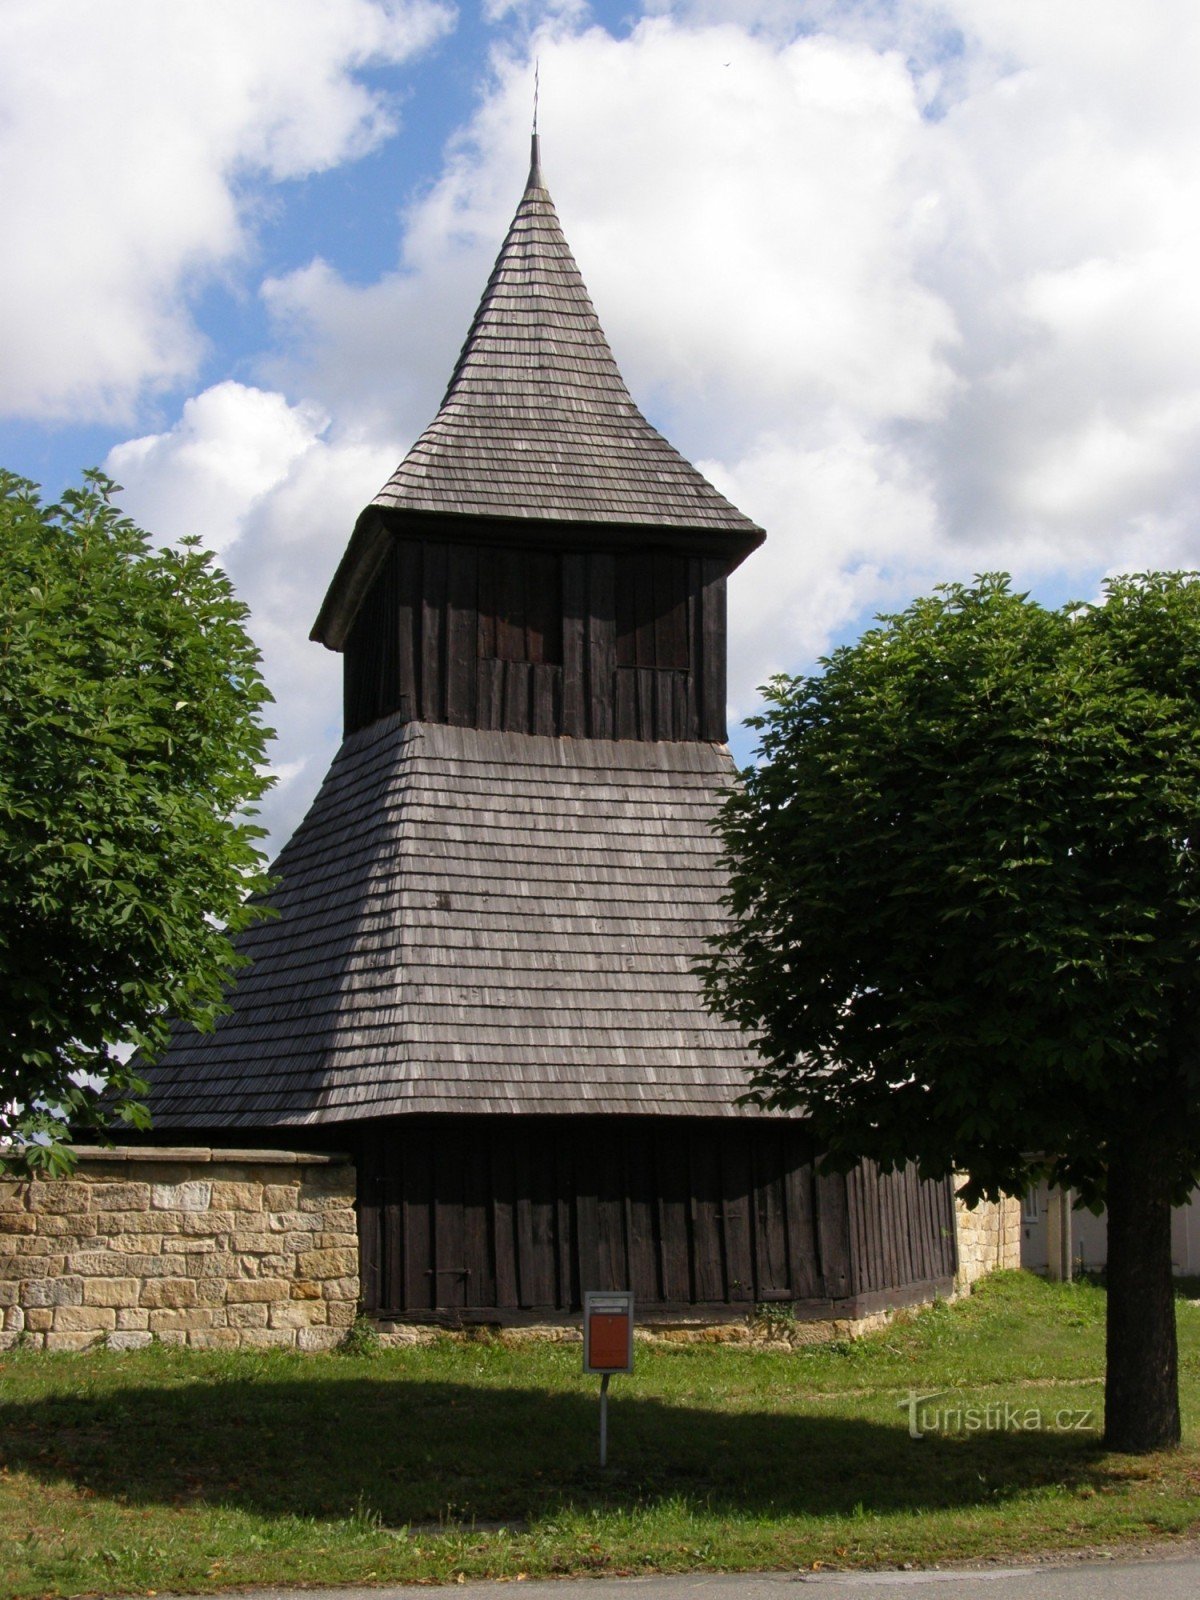 Vysočany - houten kerk van St. Markten met een houten belfort